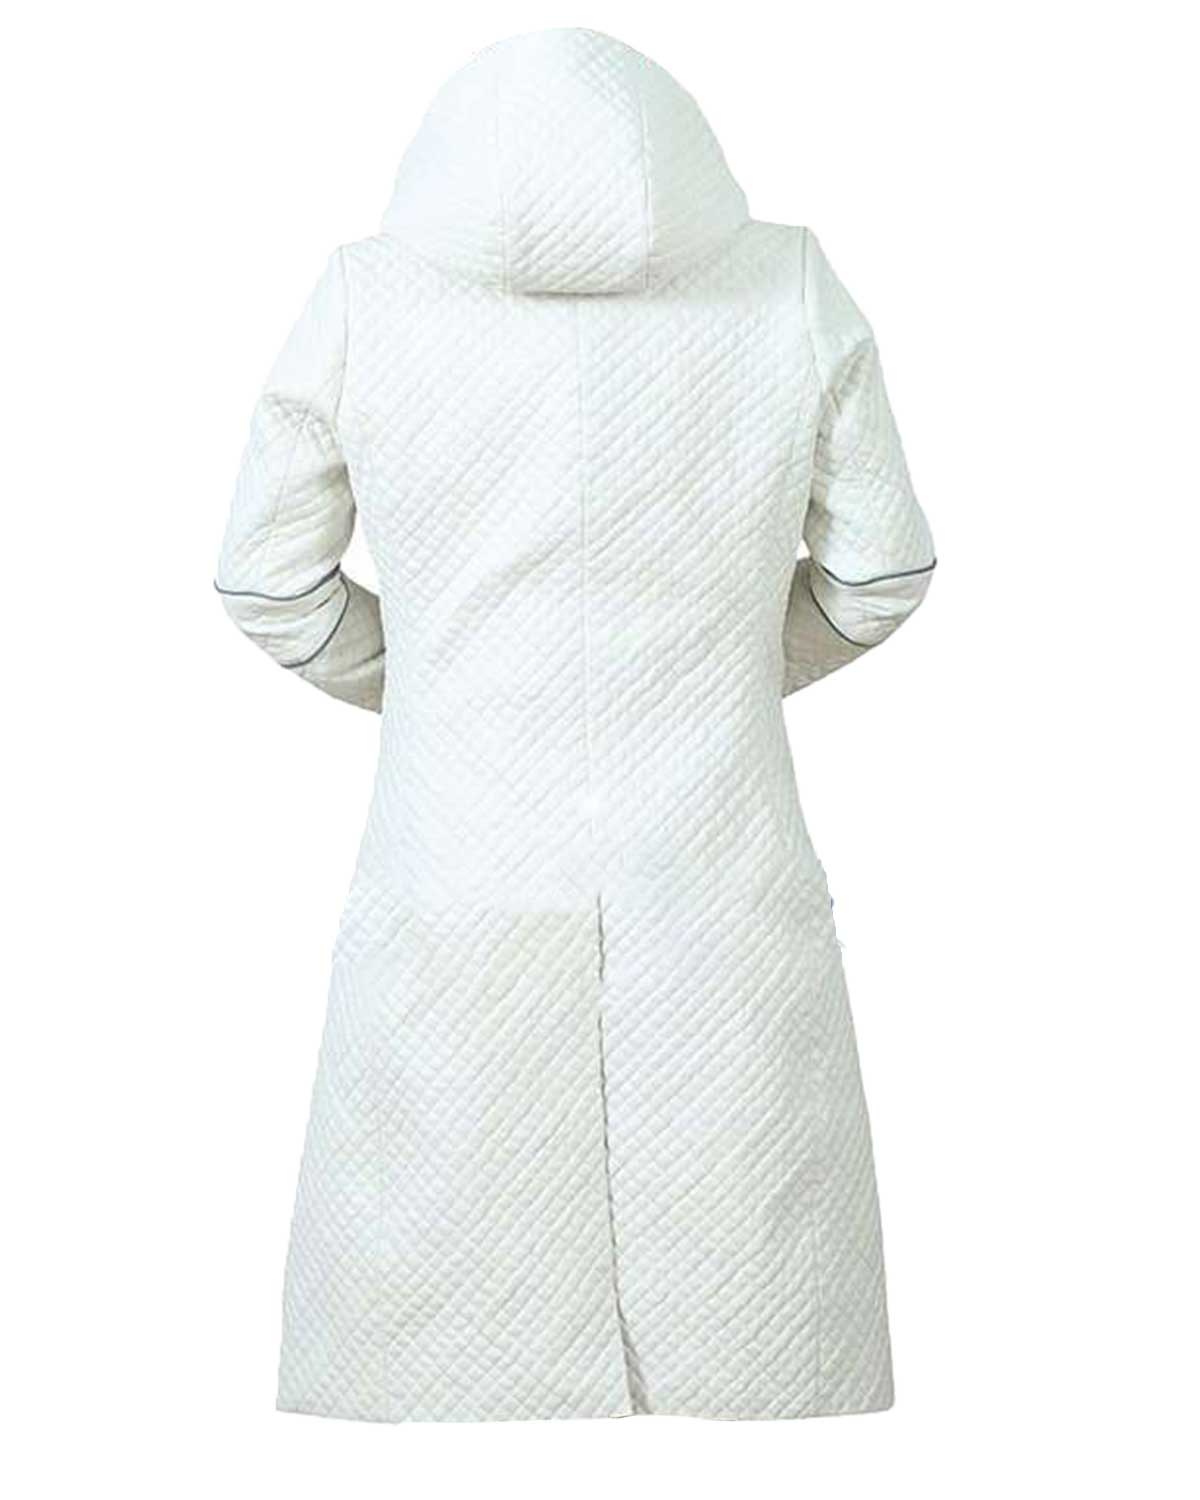 Elite Sylvia Hoeks Blade Runner 2049 White Leather Jacket